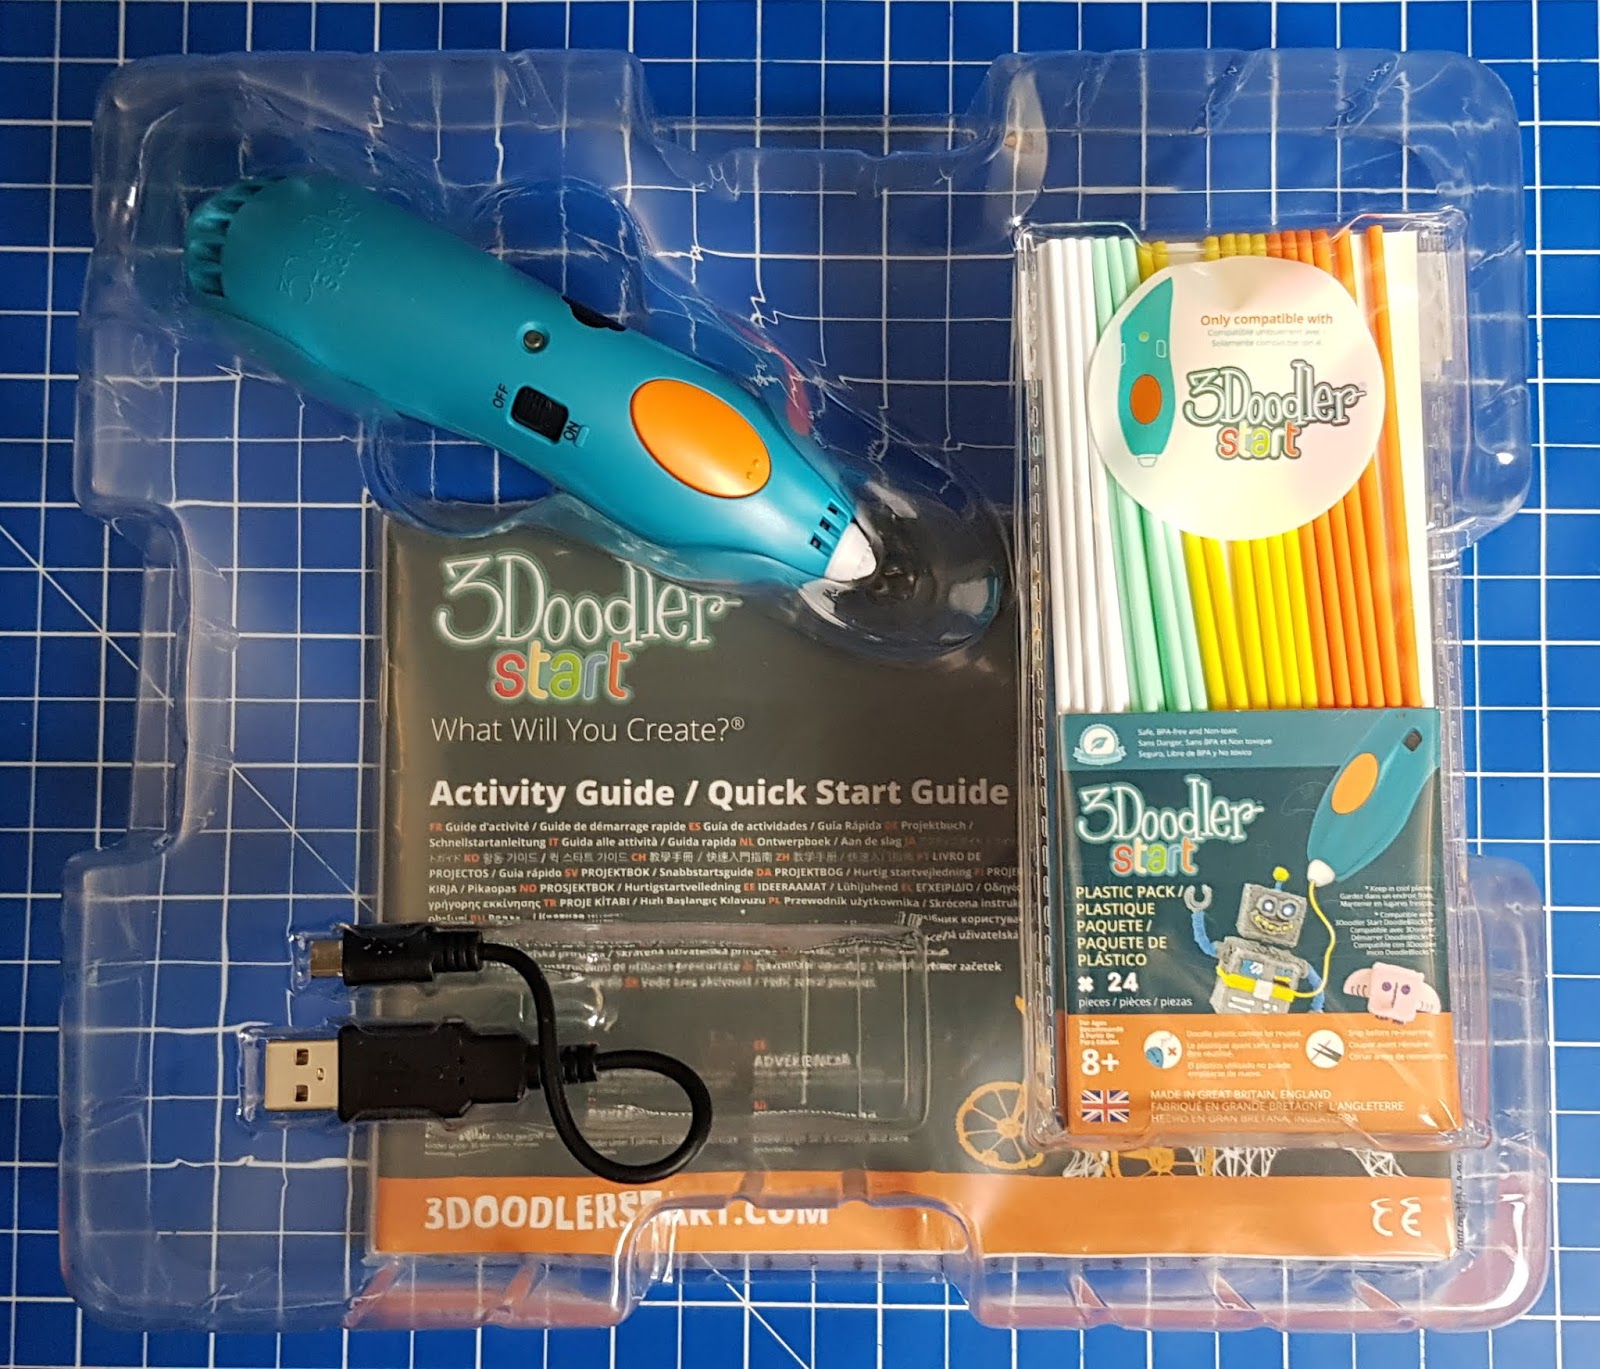 3Doodler Start Essentials Pen Set - Review - Mum, Thats Me